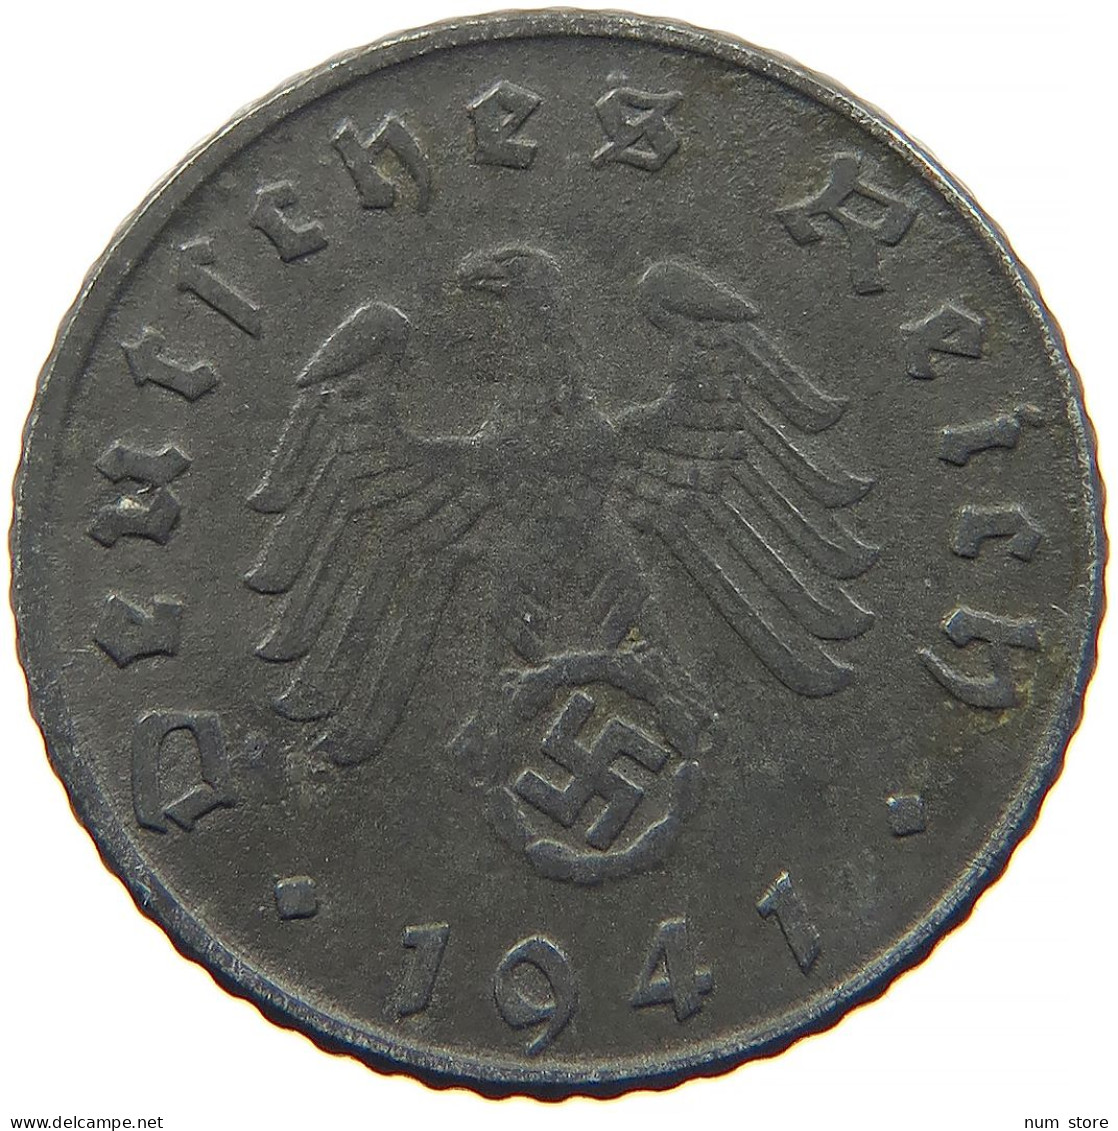 GERMANY 5 REICHSPFENNIG 1941 D #s091 0919 - 5 Reichspfennig